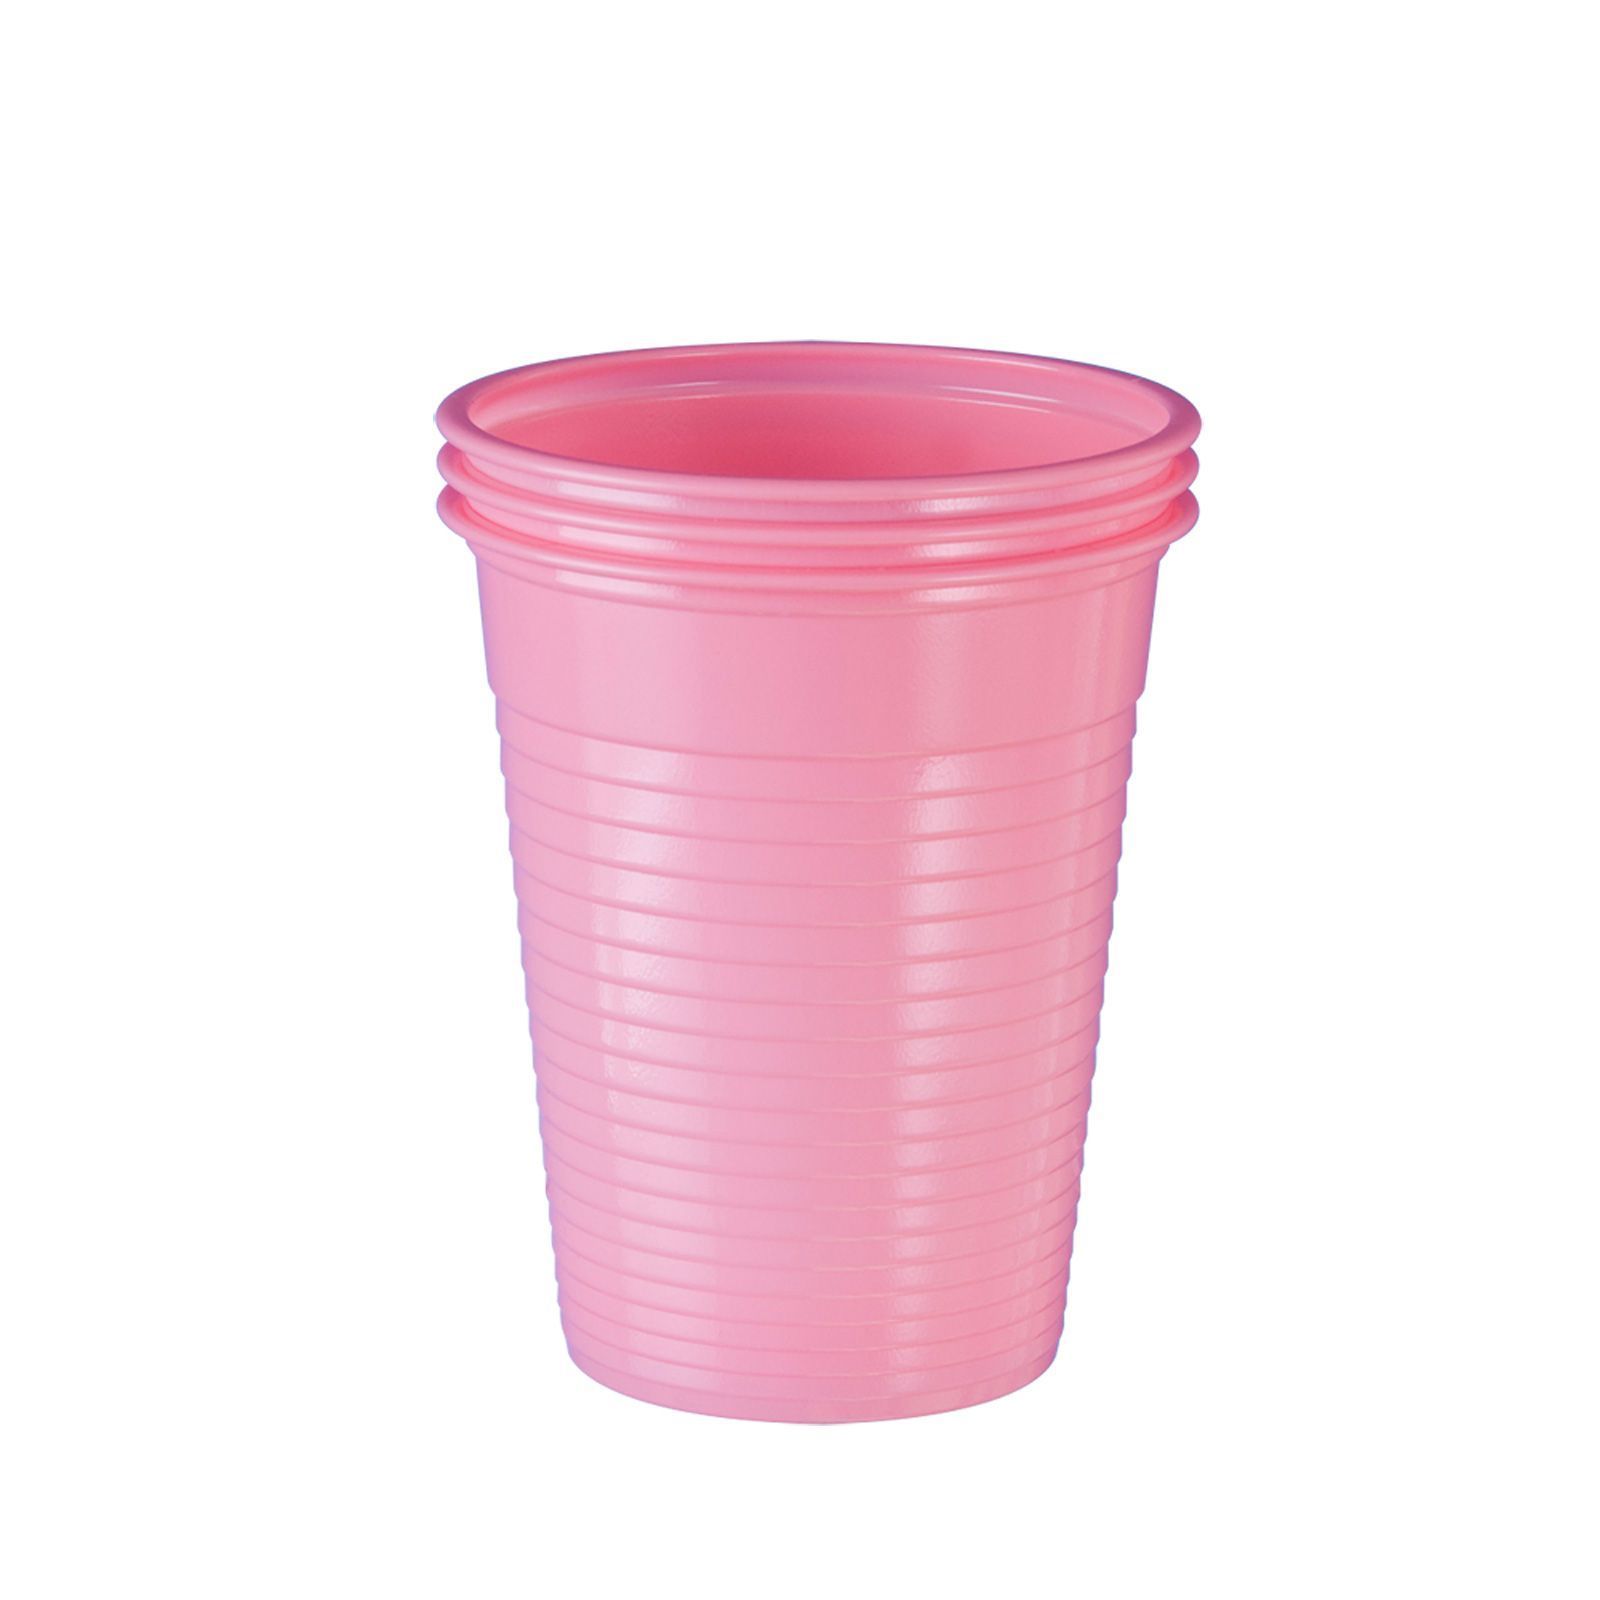 Wellsamed чашки пластмасови  за еднократна употреба розови, 180 ml;  100 бр. 